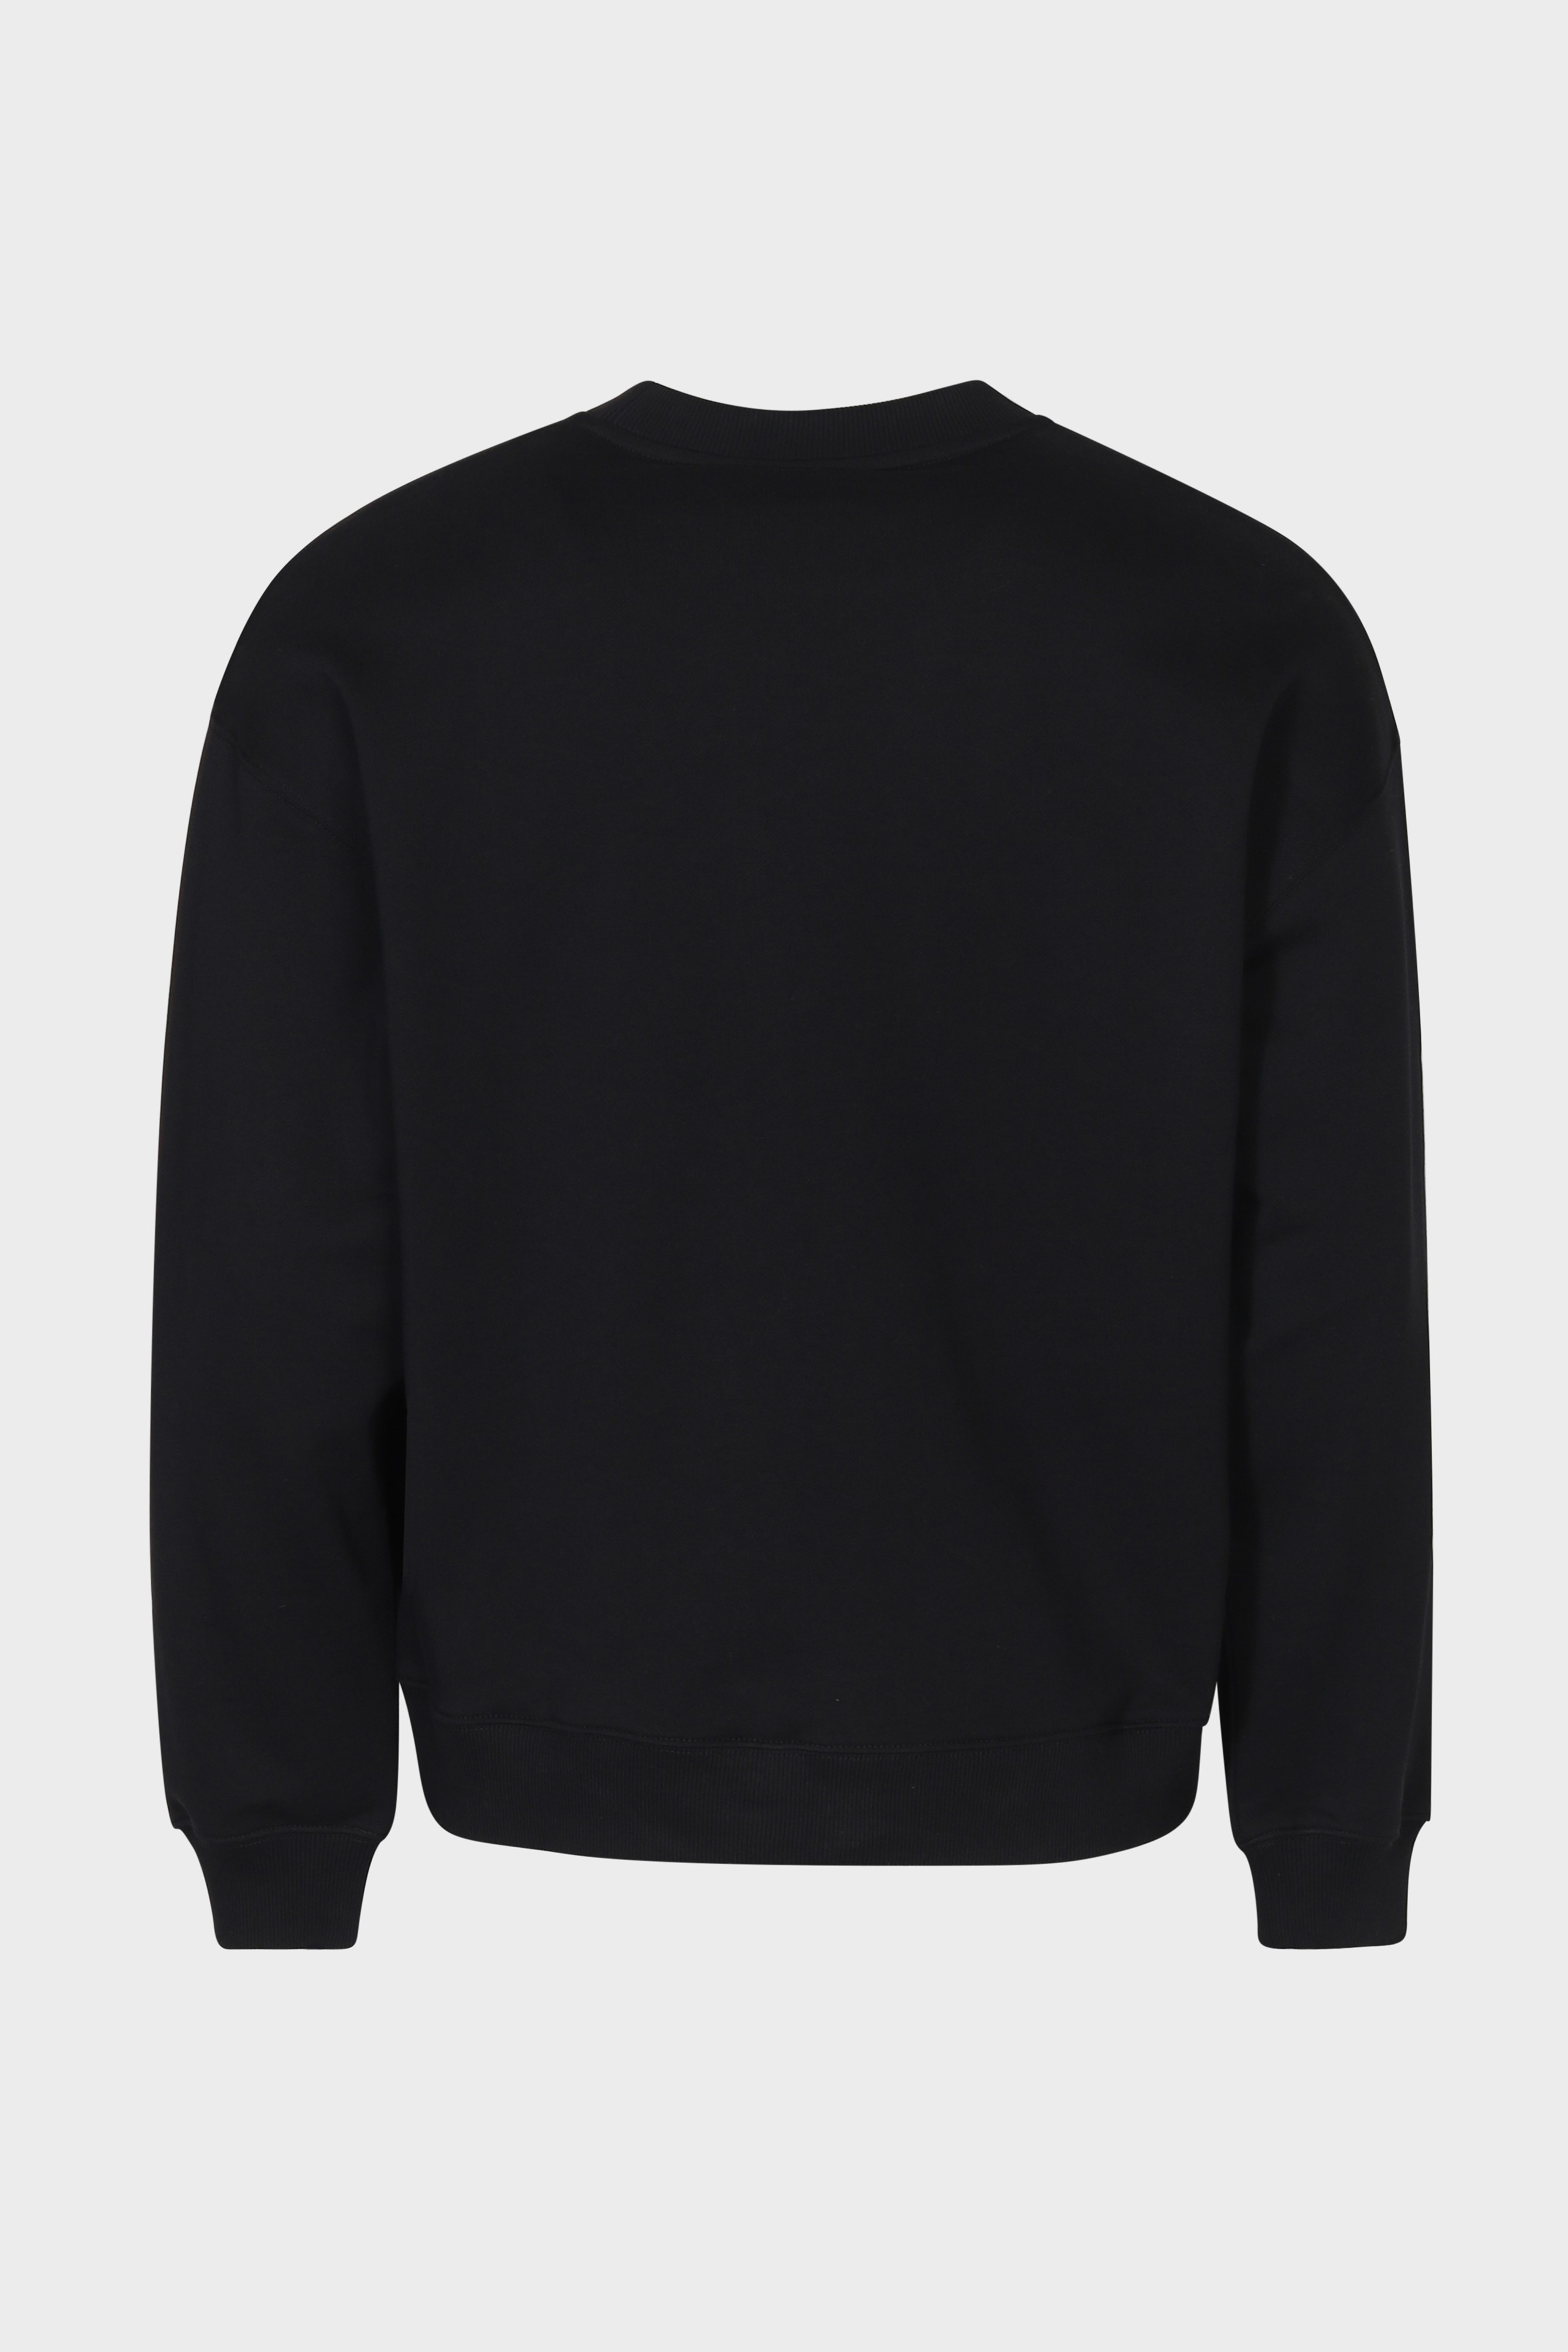 AXEL ARIGATO Spade Sweatshirt in Black XL